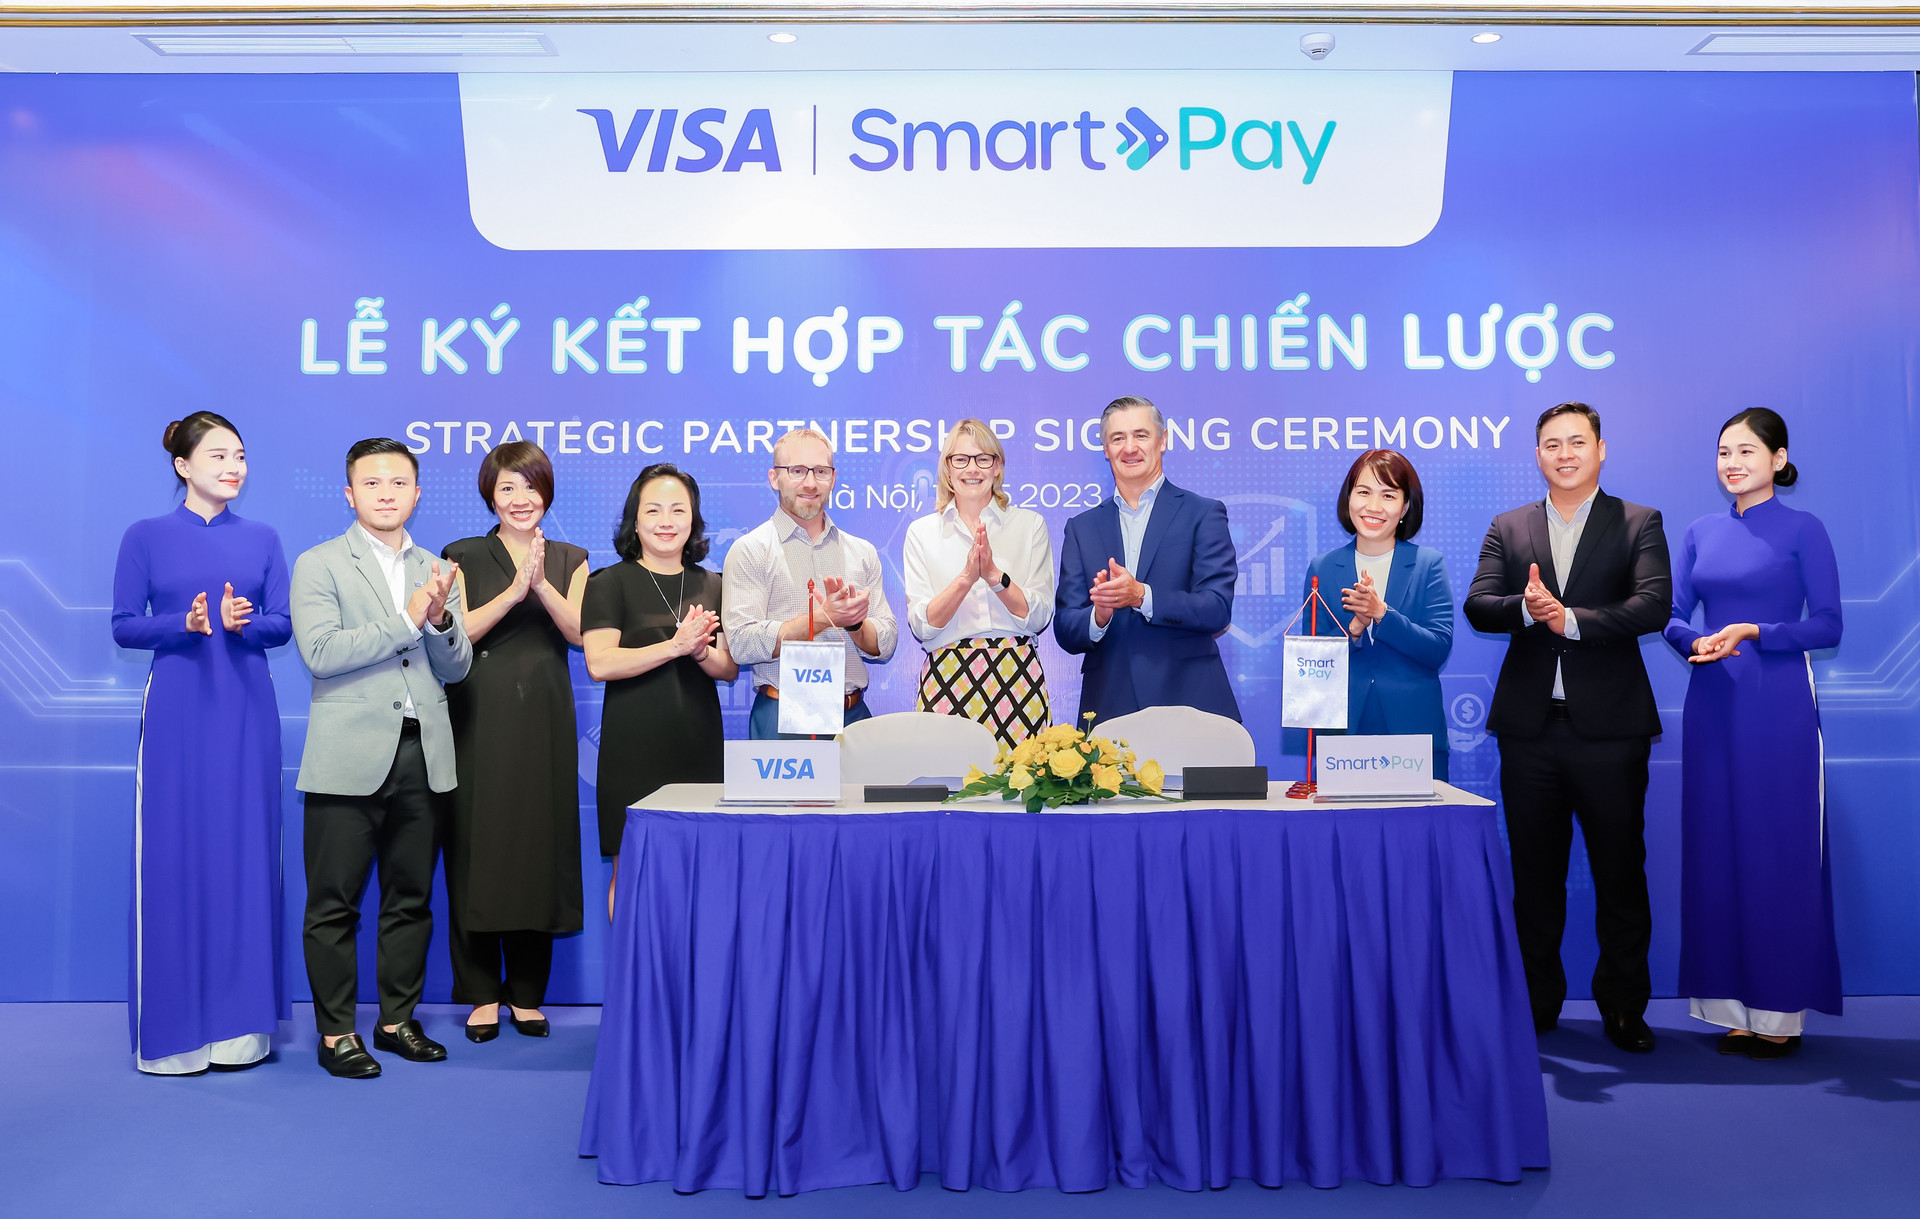 Tin vui cho các tiểu thương và SME Việt Nam: Visa bắt tay với doanh nghiệp fintech 40 triệu người dùng để hỗ trợ giải pháp thanh toán số - Ảnh 1.